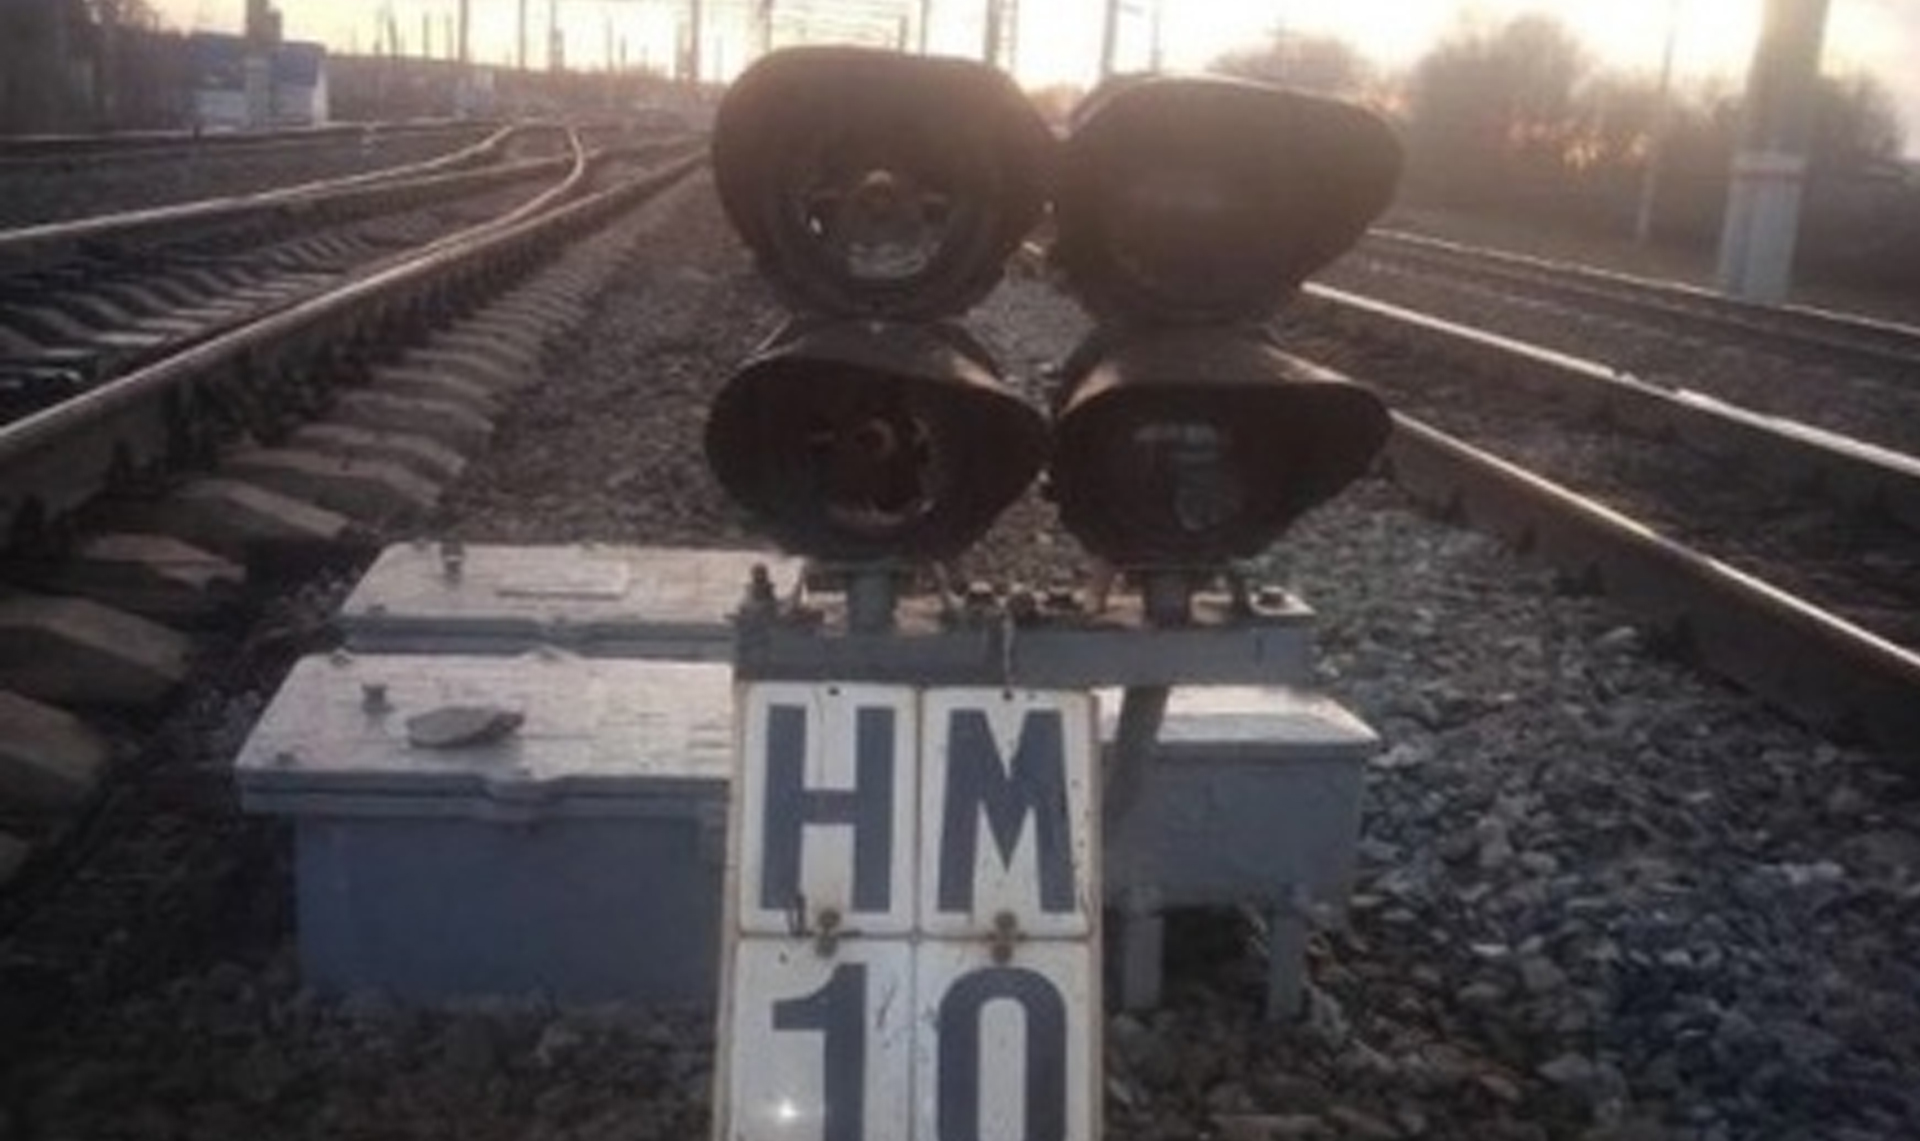 Дети разбили линзы на сигнальных светофорах вблизи железной дороги на станции Полетаево